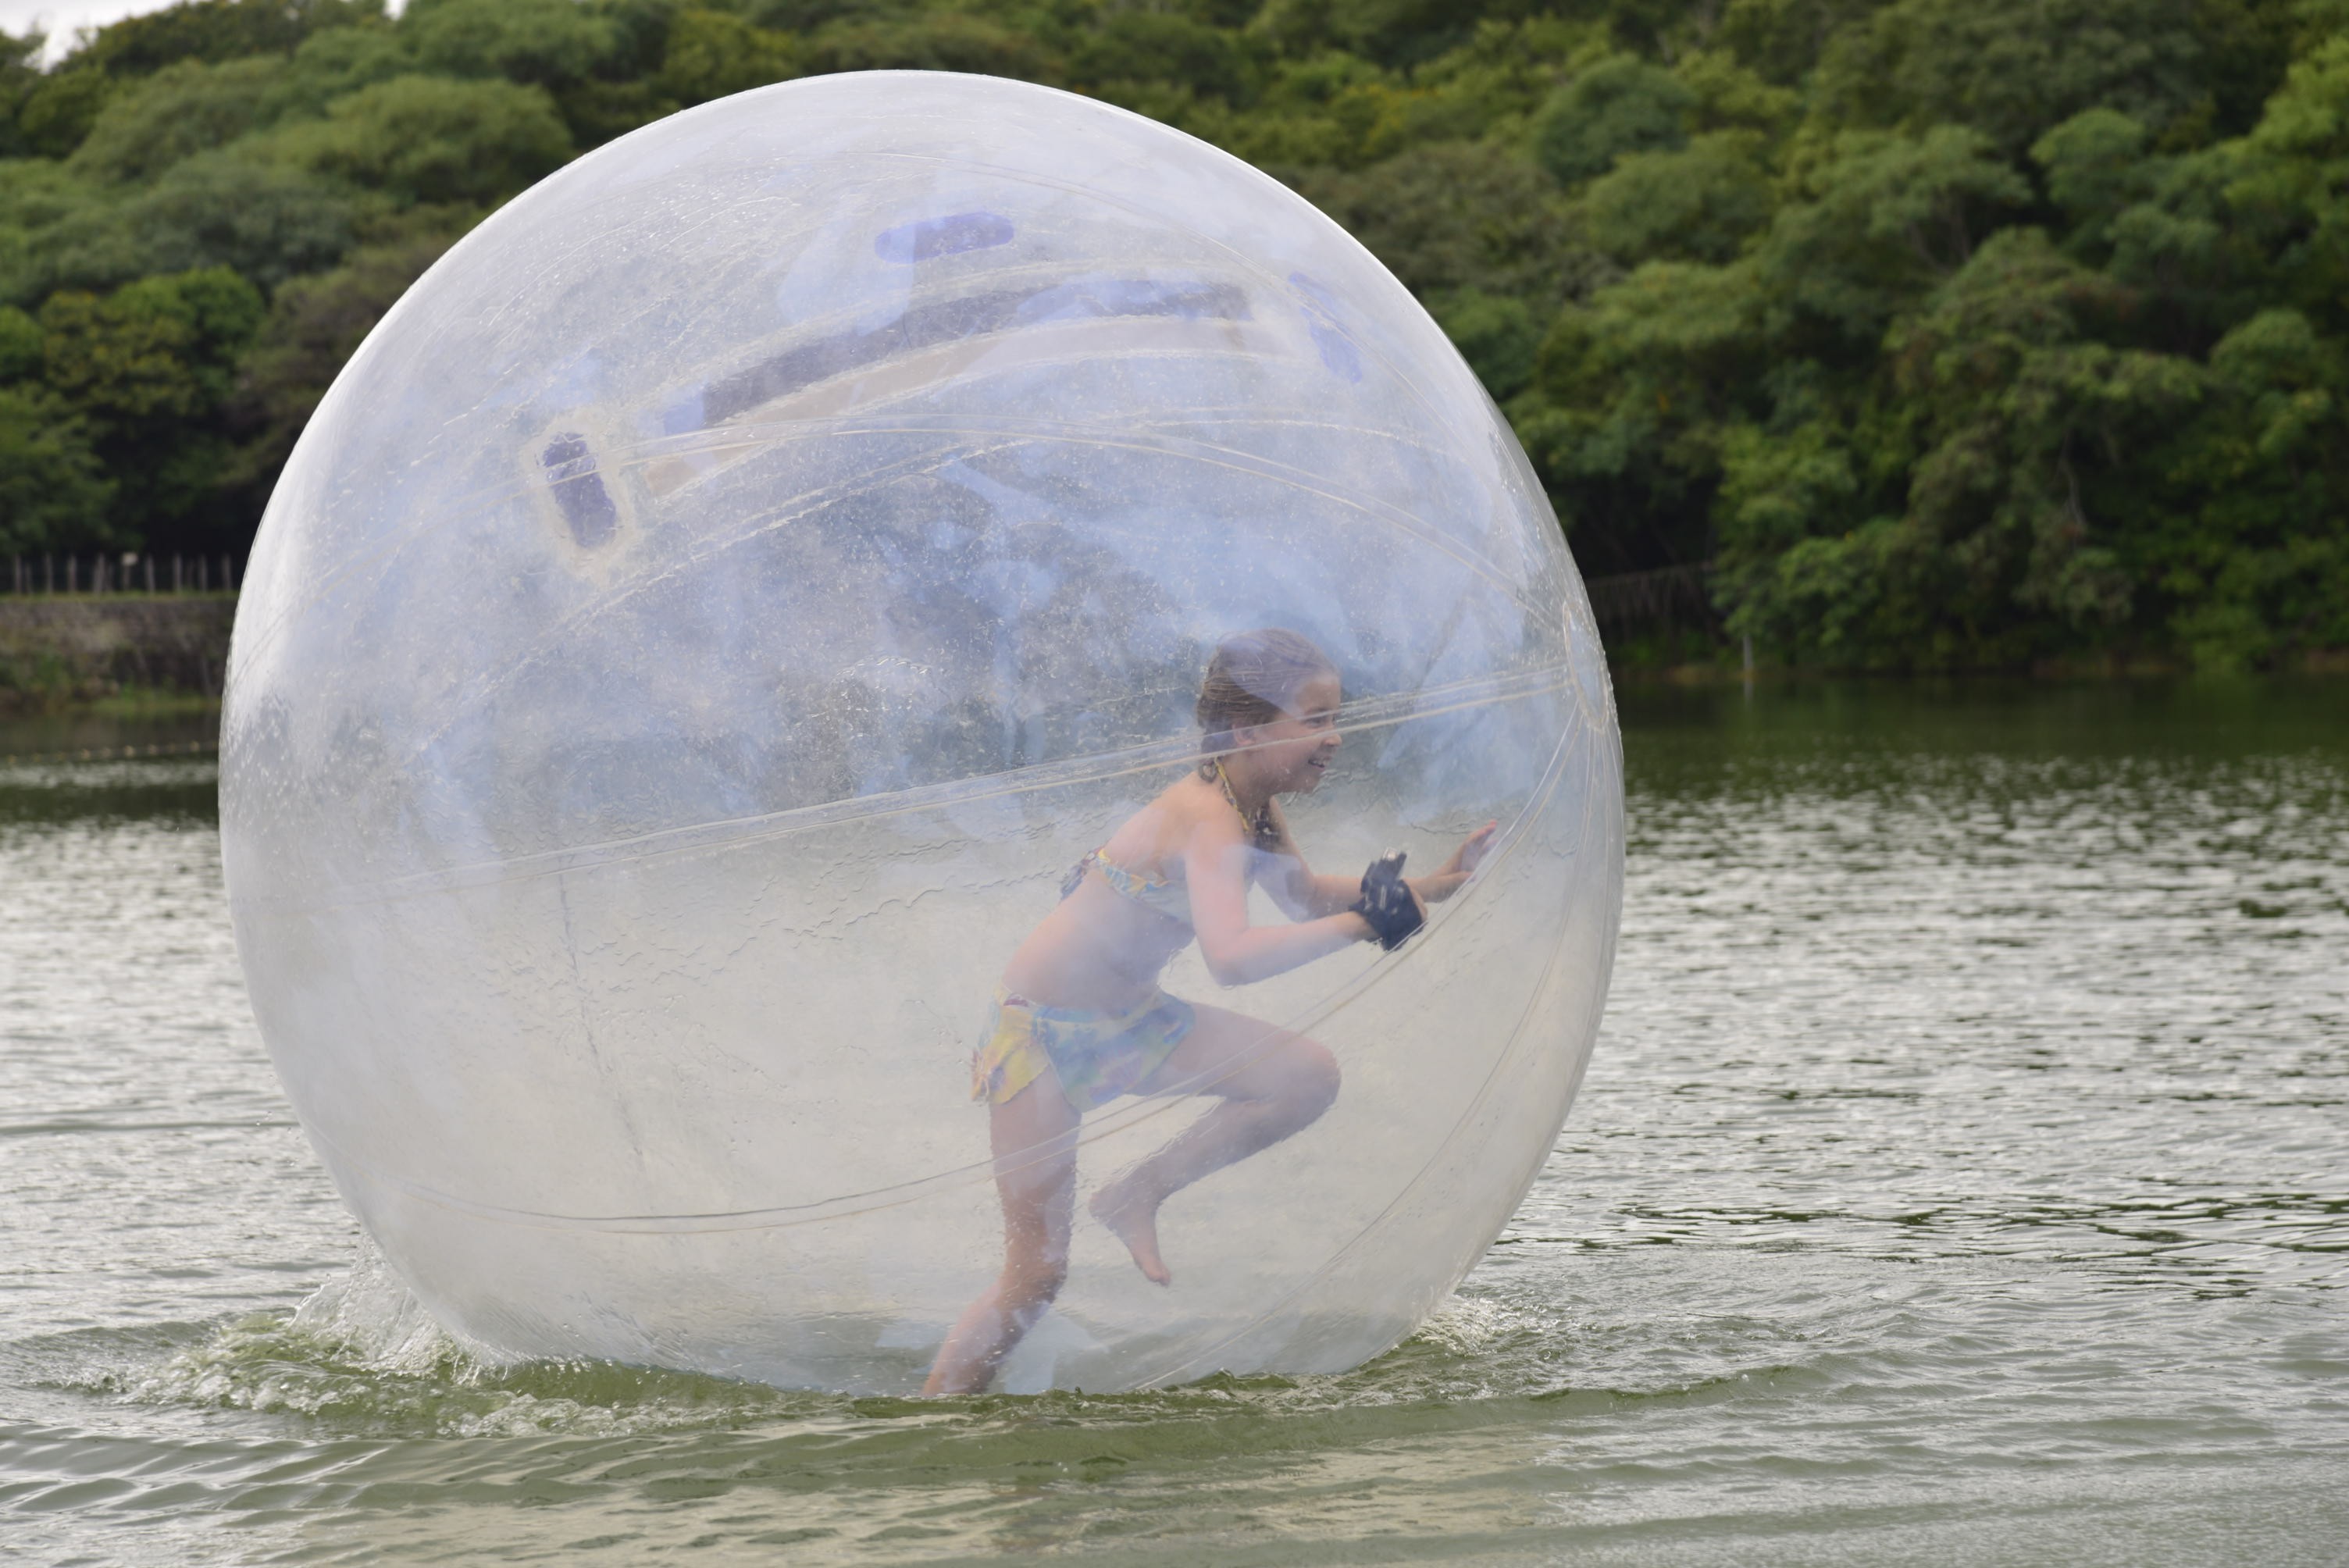 Aquaball é uma das atividades do iPark (Foto: Divulgação)